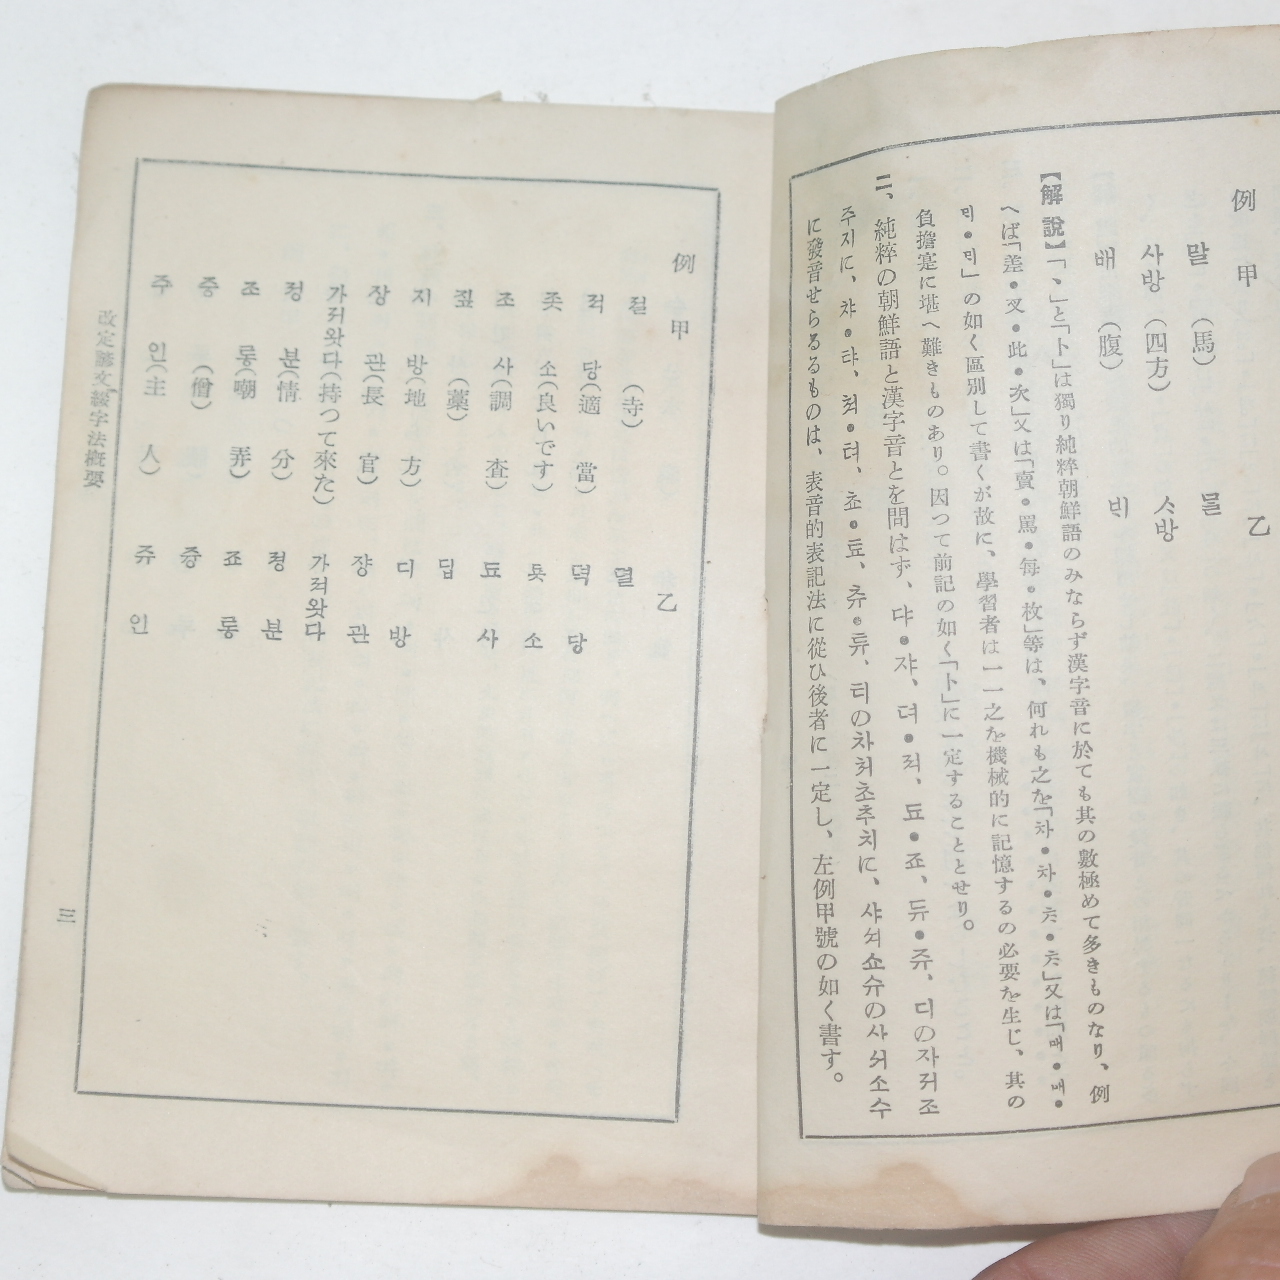 1935년 경성조선어연구회발행 개정언문철자법개요(改定諺文綴字法槪要)